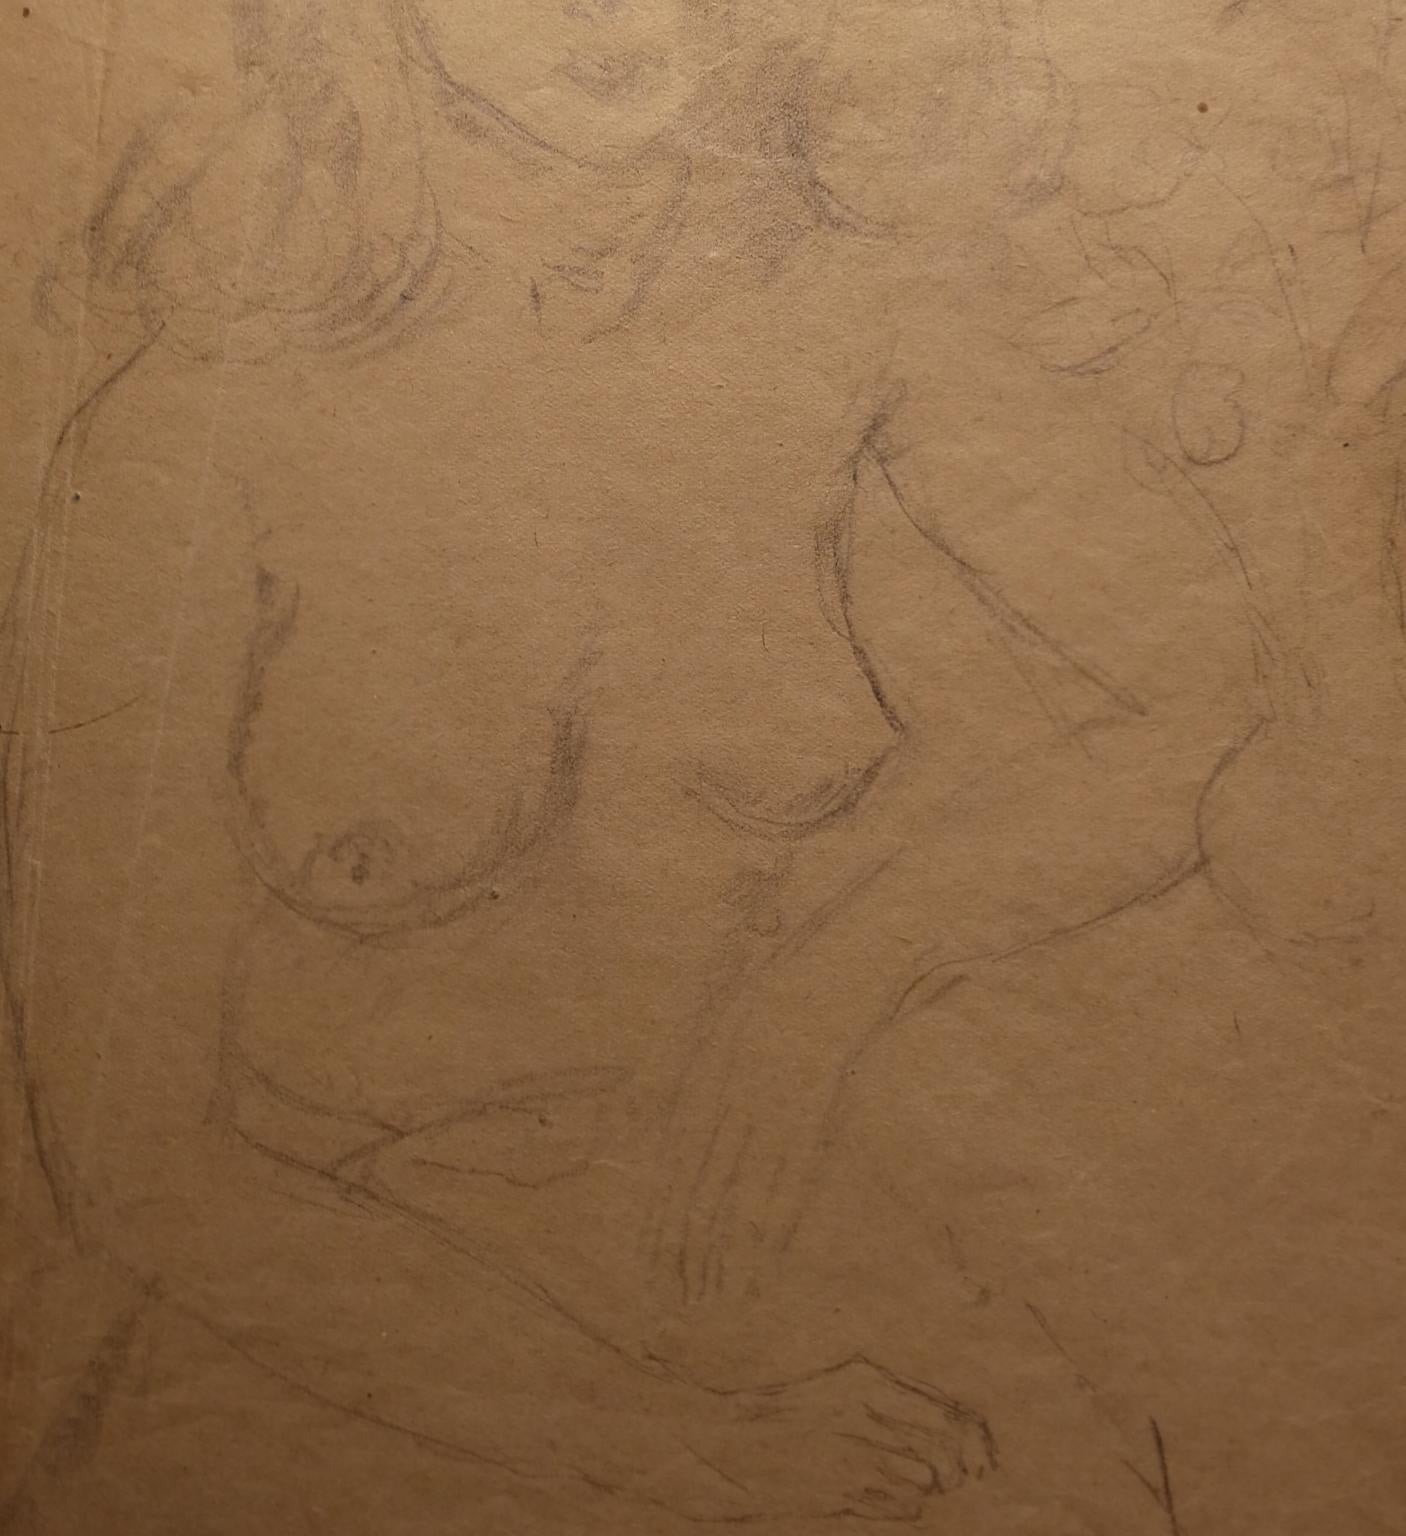 Ritratto di nudo femminile matita su carta firmato e datato - Art by Guido Peyron